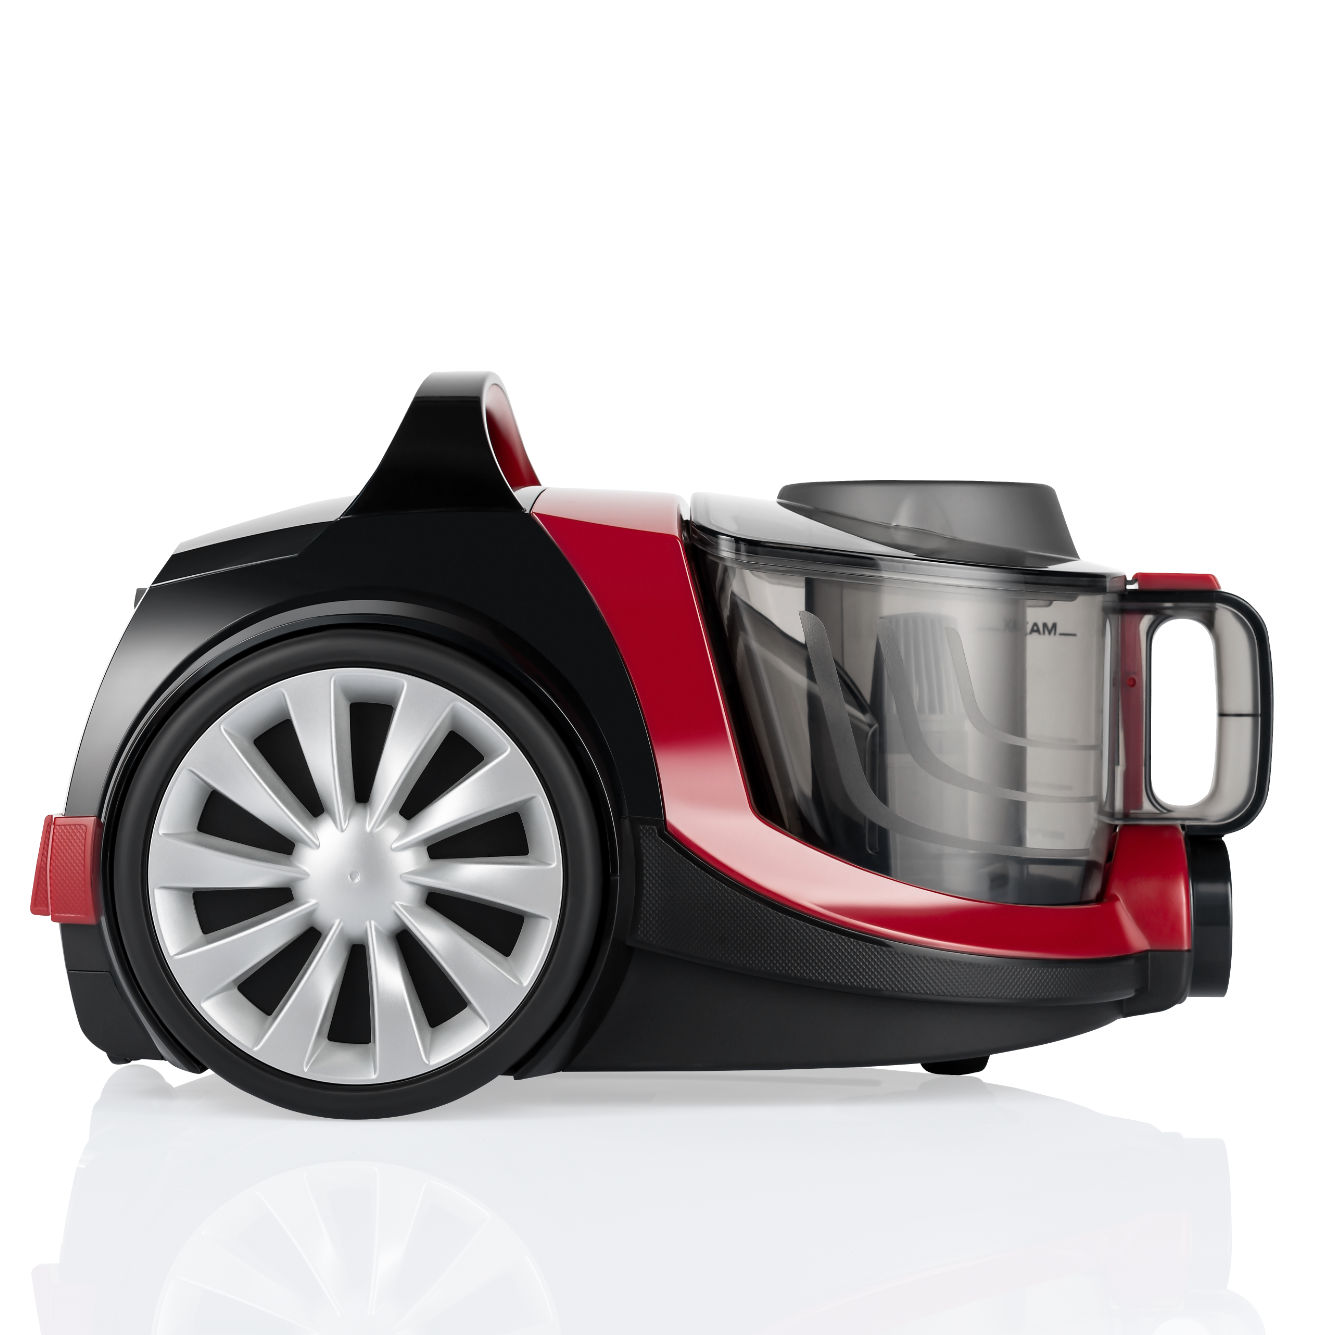 ARNICA Tesla 750 Rot) maximale Bodenstaubsauger Leistung: Staubsauger, Watt